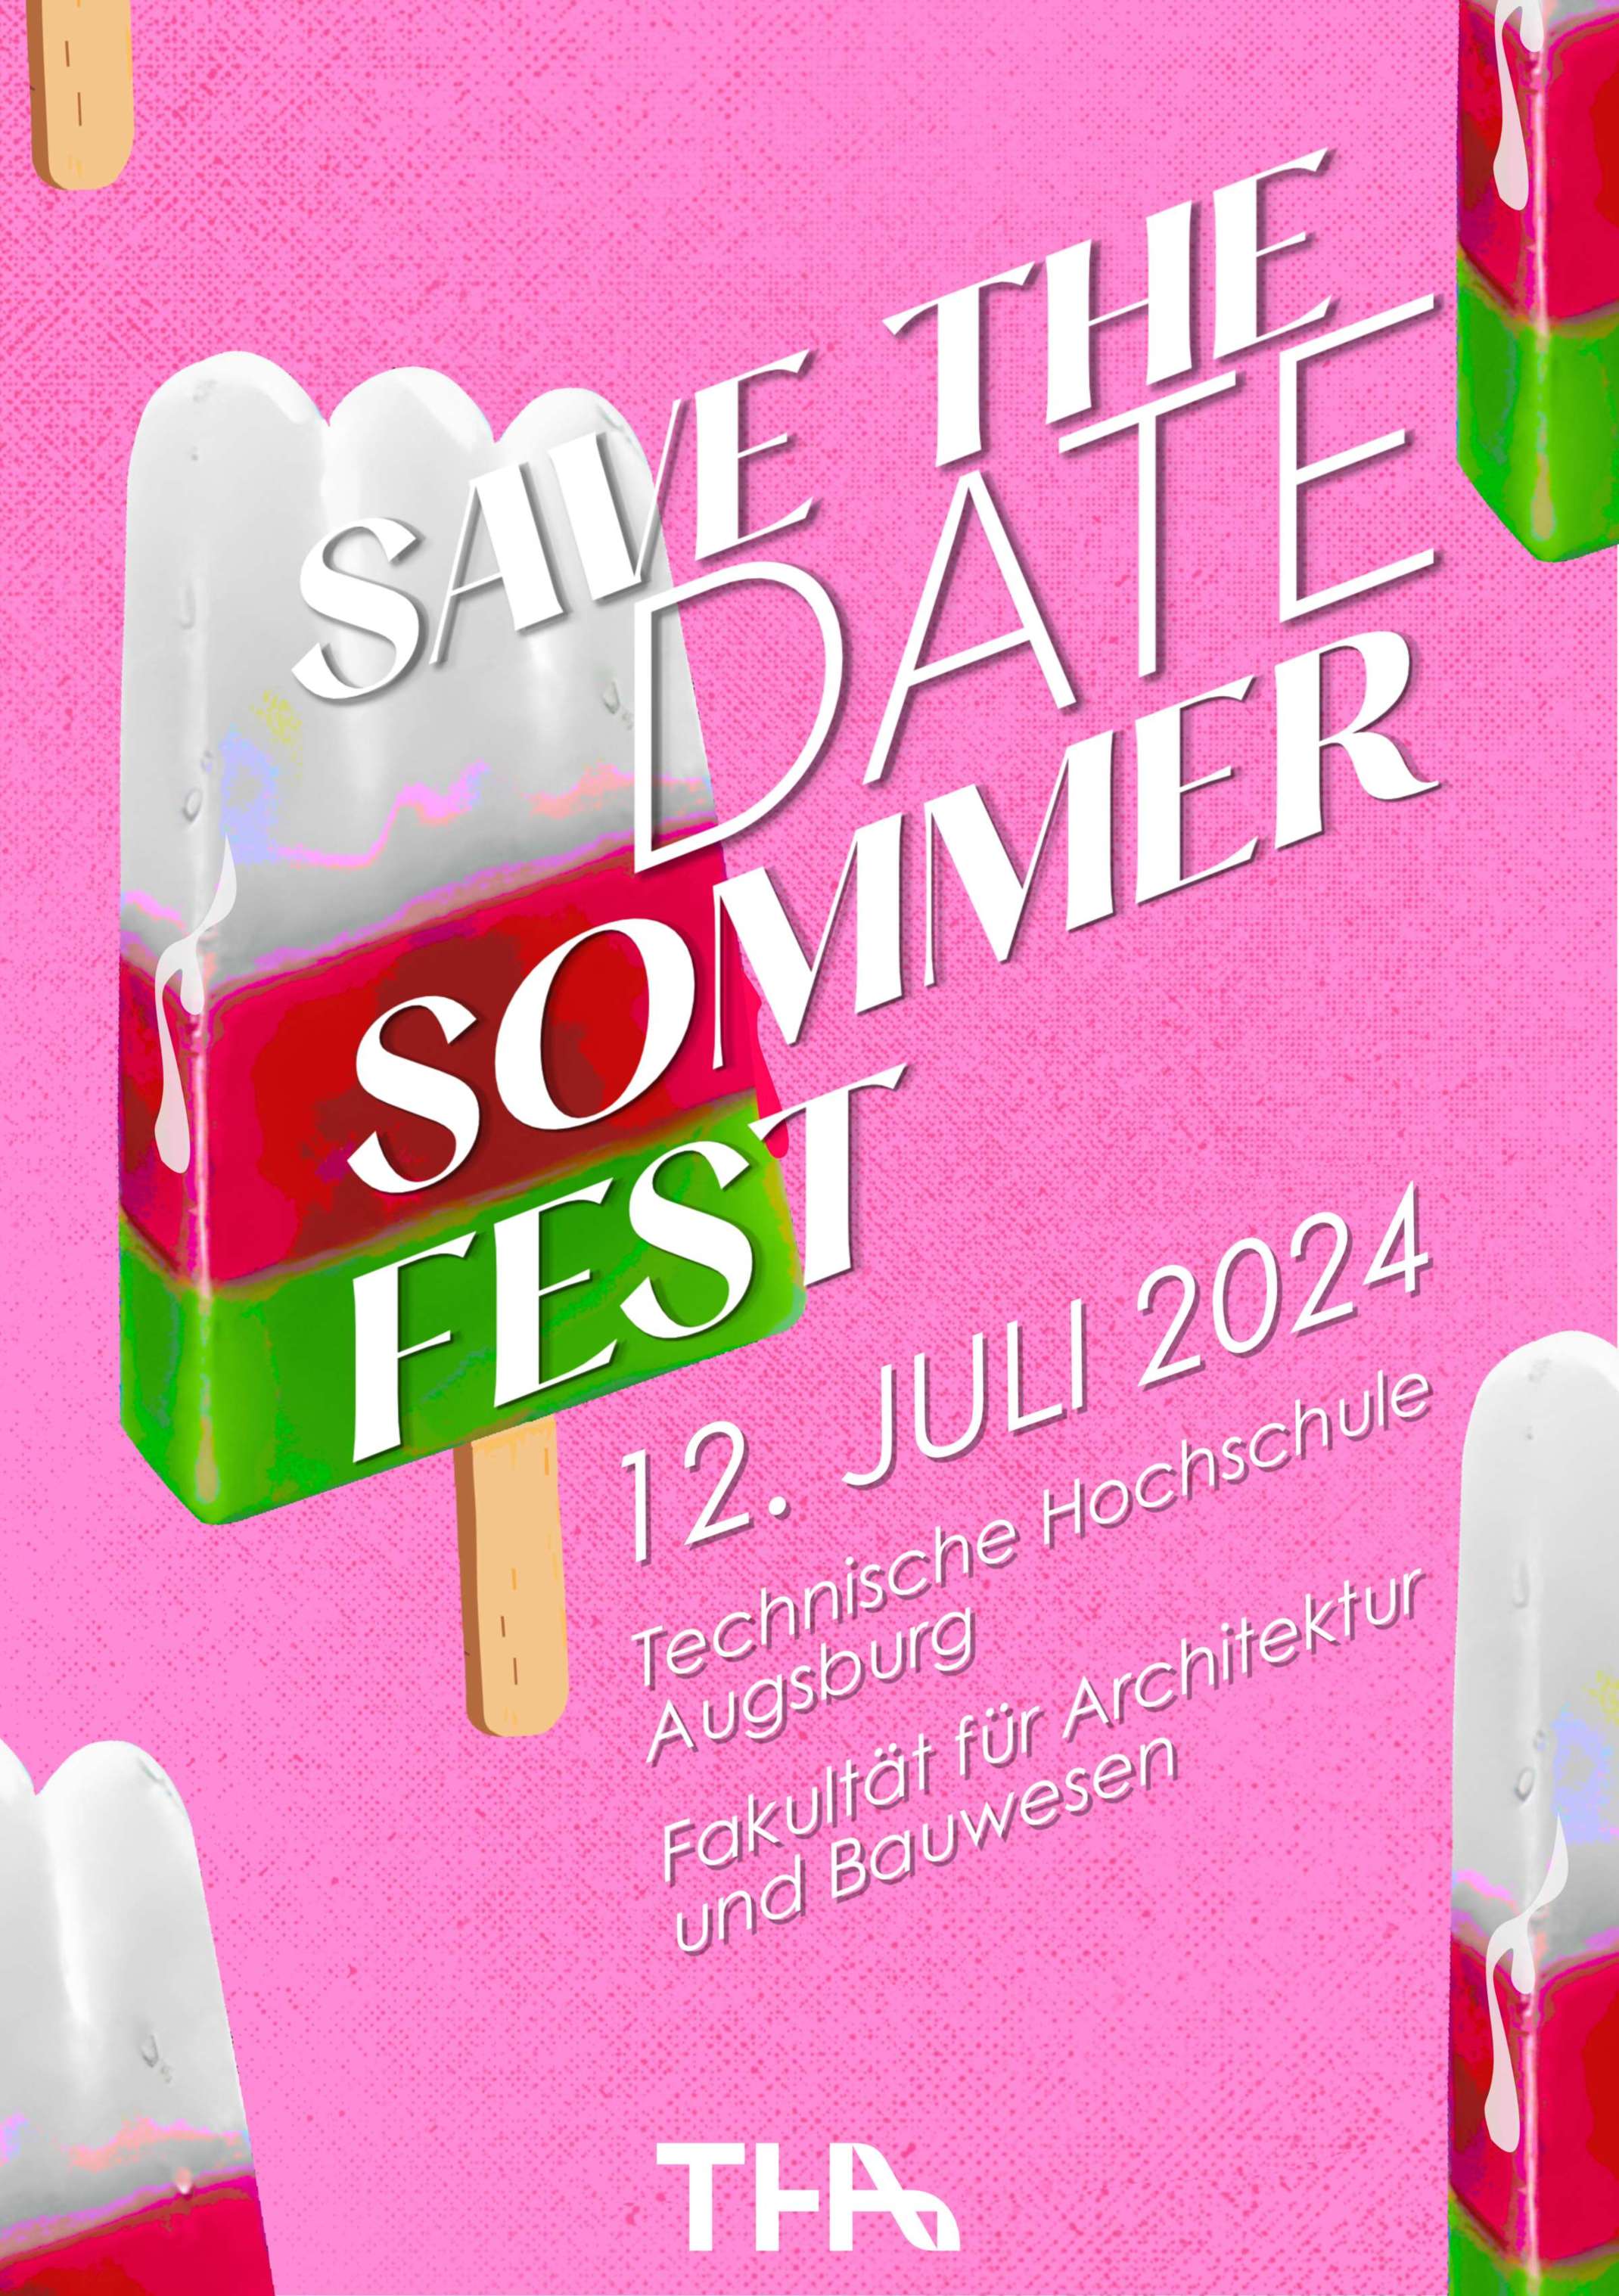 Sommerfest am 14. Juli 2023 an der Fakultät für Architektur und Bauwesen